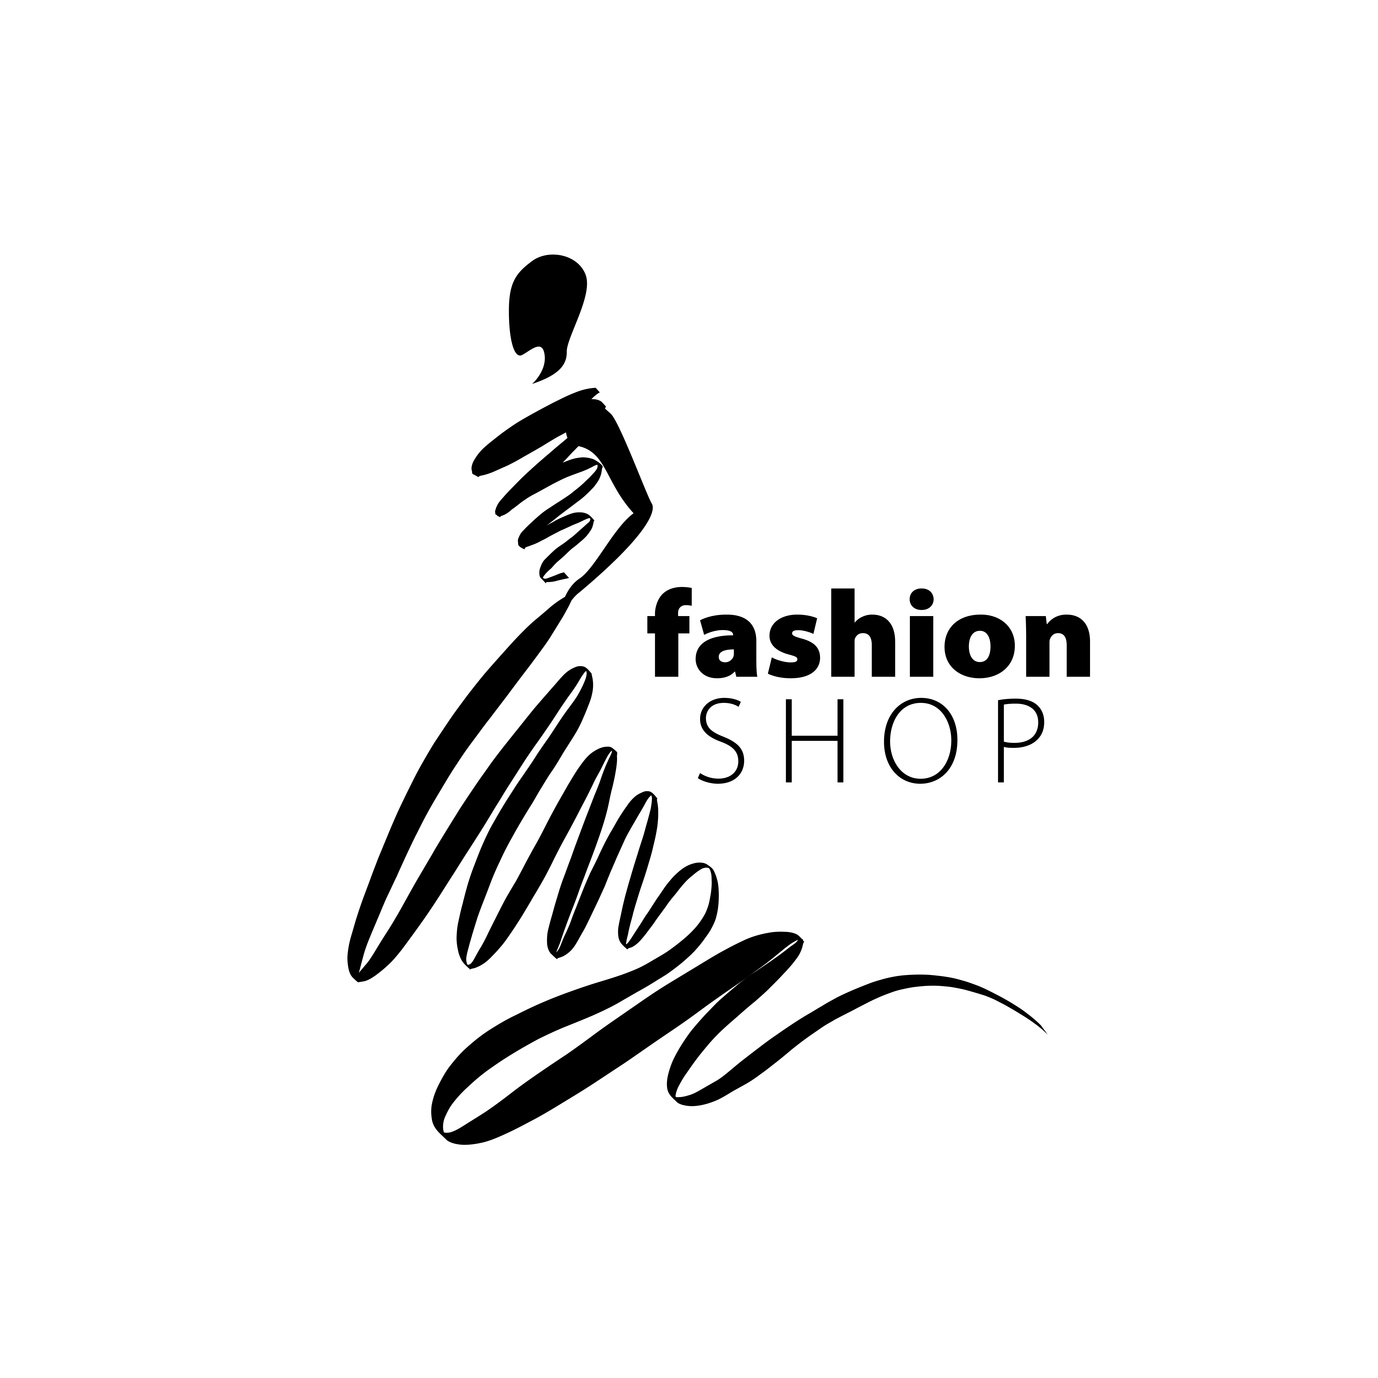 clothing logo ideas 3